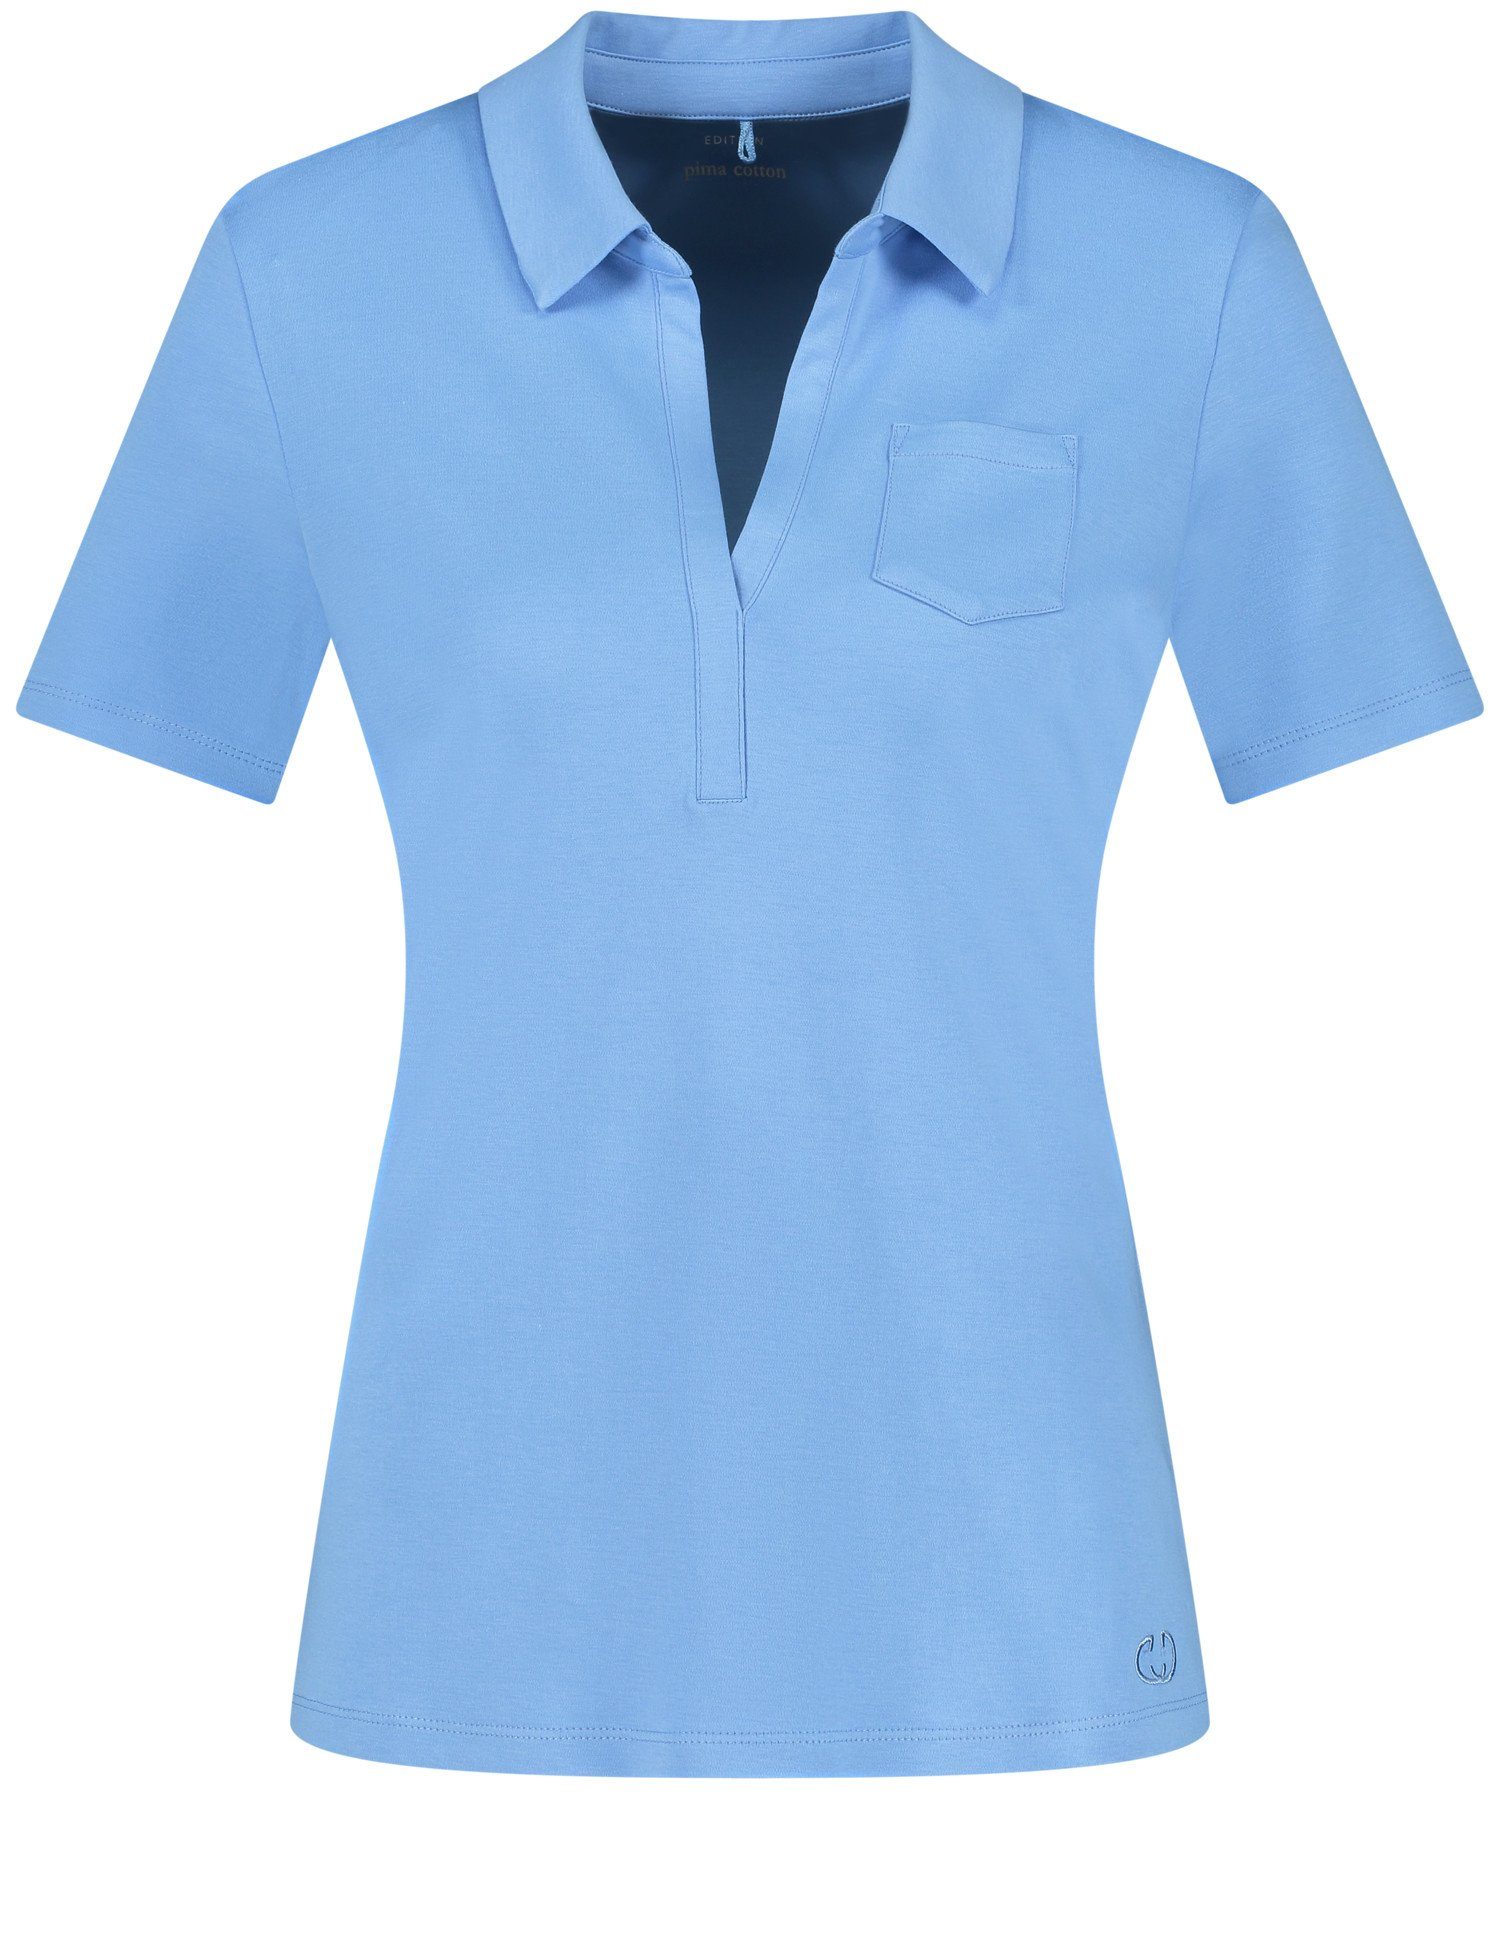 Poloshirt WEBER Bright GERRY Blue Kurzarm Poloshirt